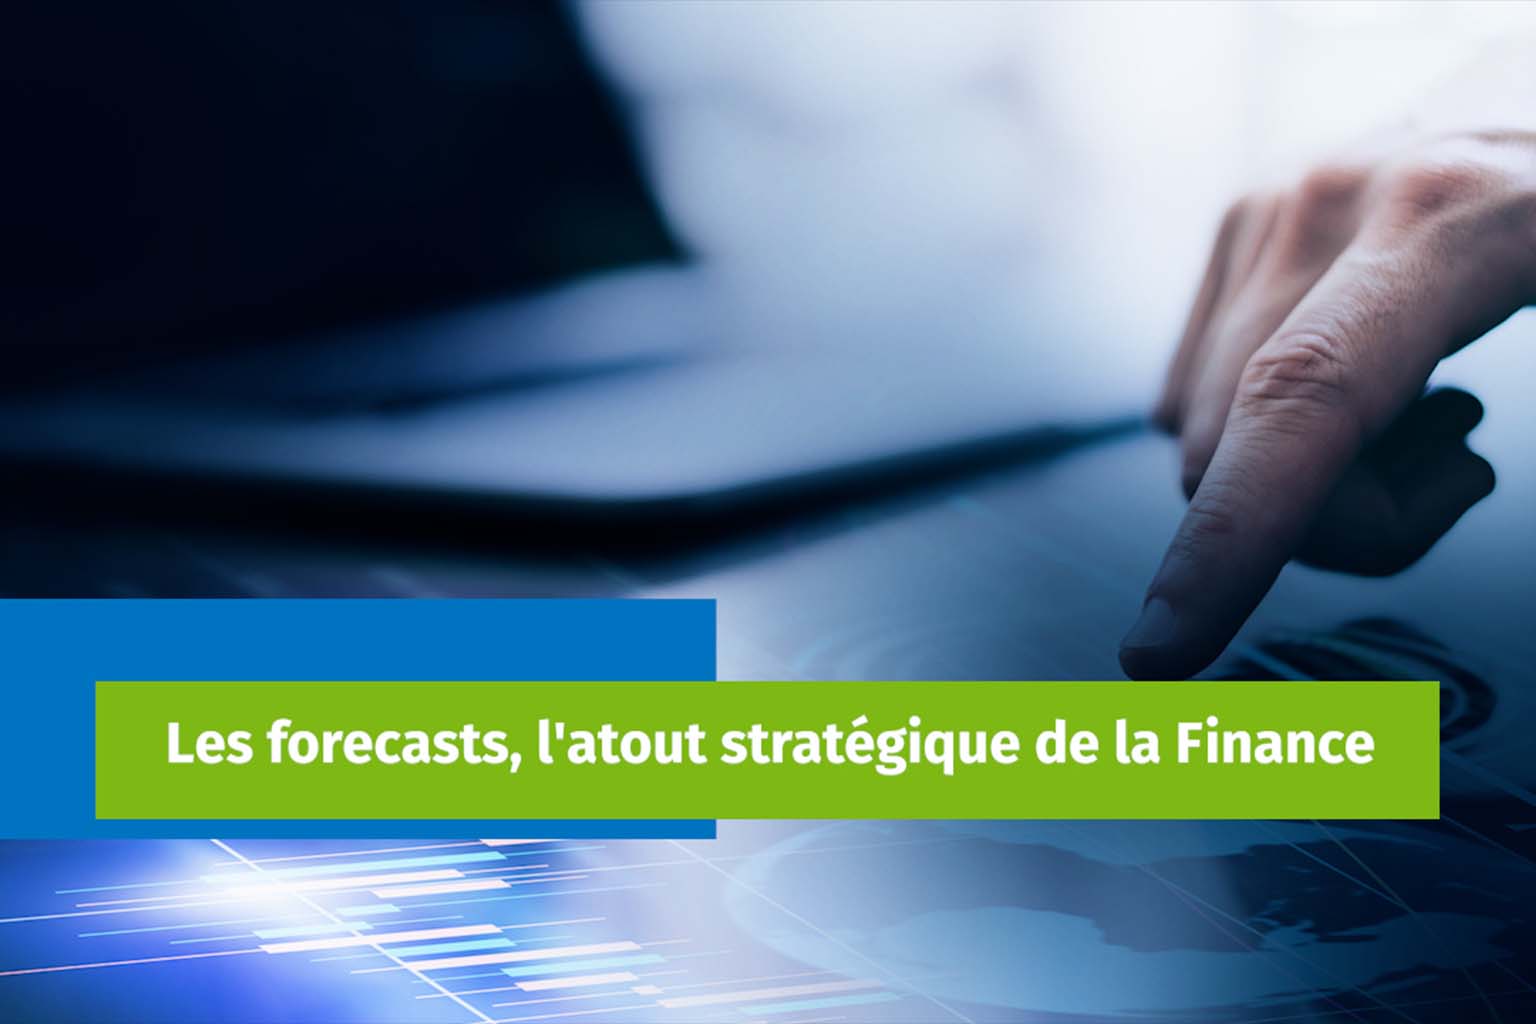 Les forecasts, l'atout stratégique de la Finance 